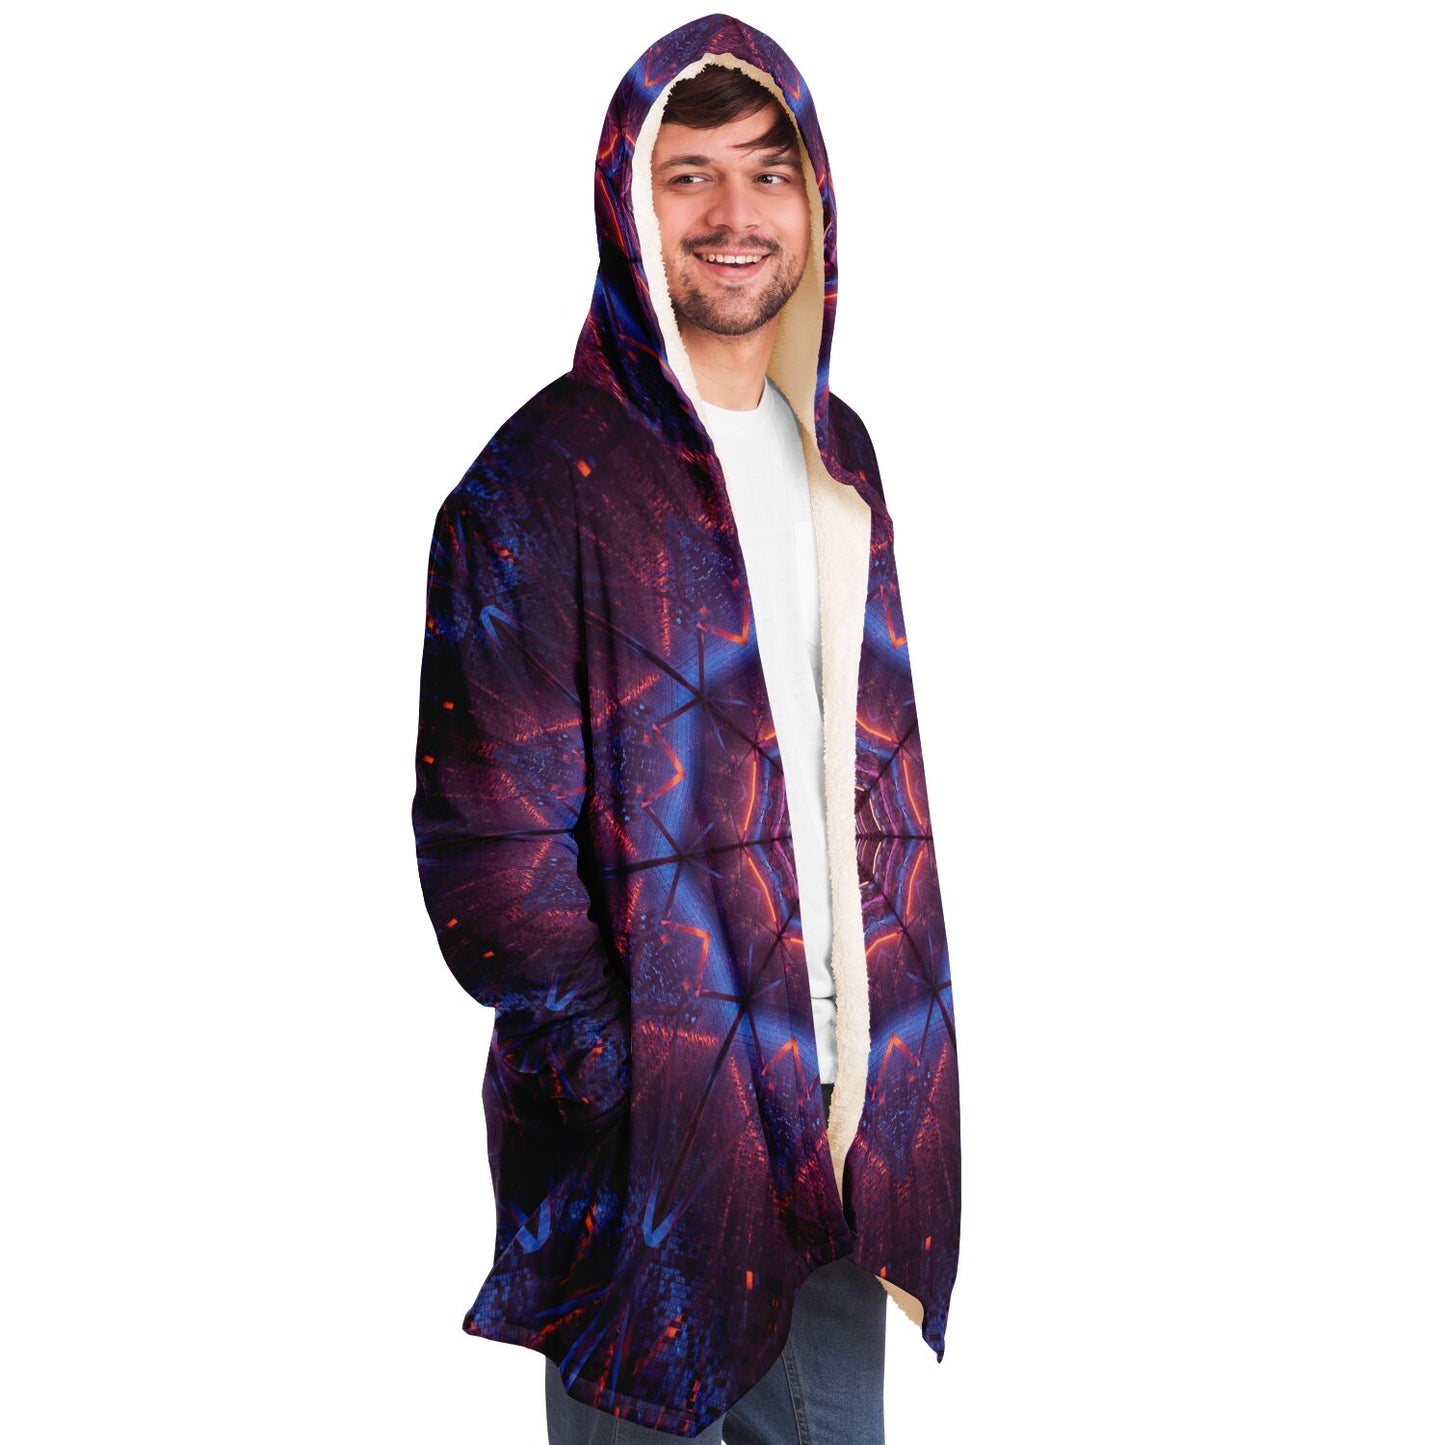 Mandala Hooded Cloak, Space Cosmic Purple Men Women Modern Winter Warm Mink Blanket Festival Rave Wearable Cape with Pockets Starcove Fashion